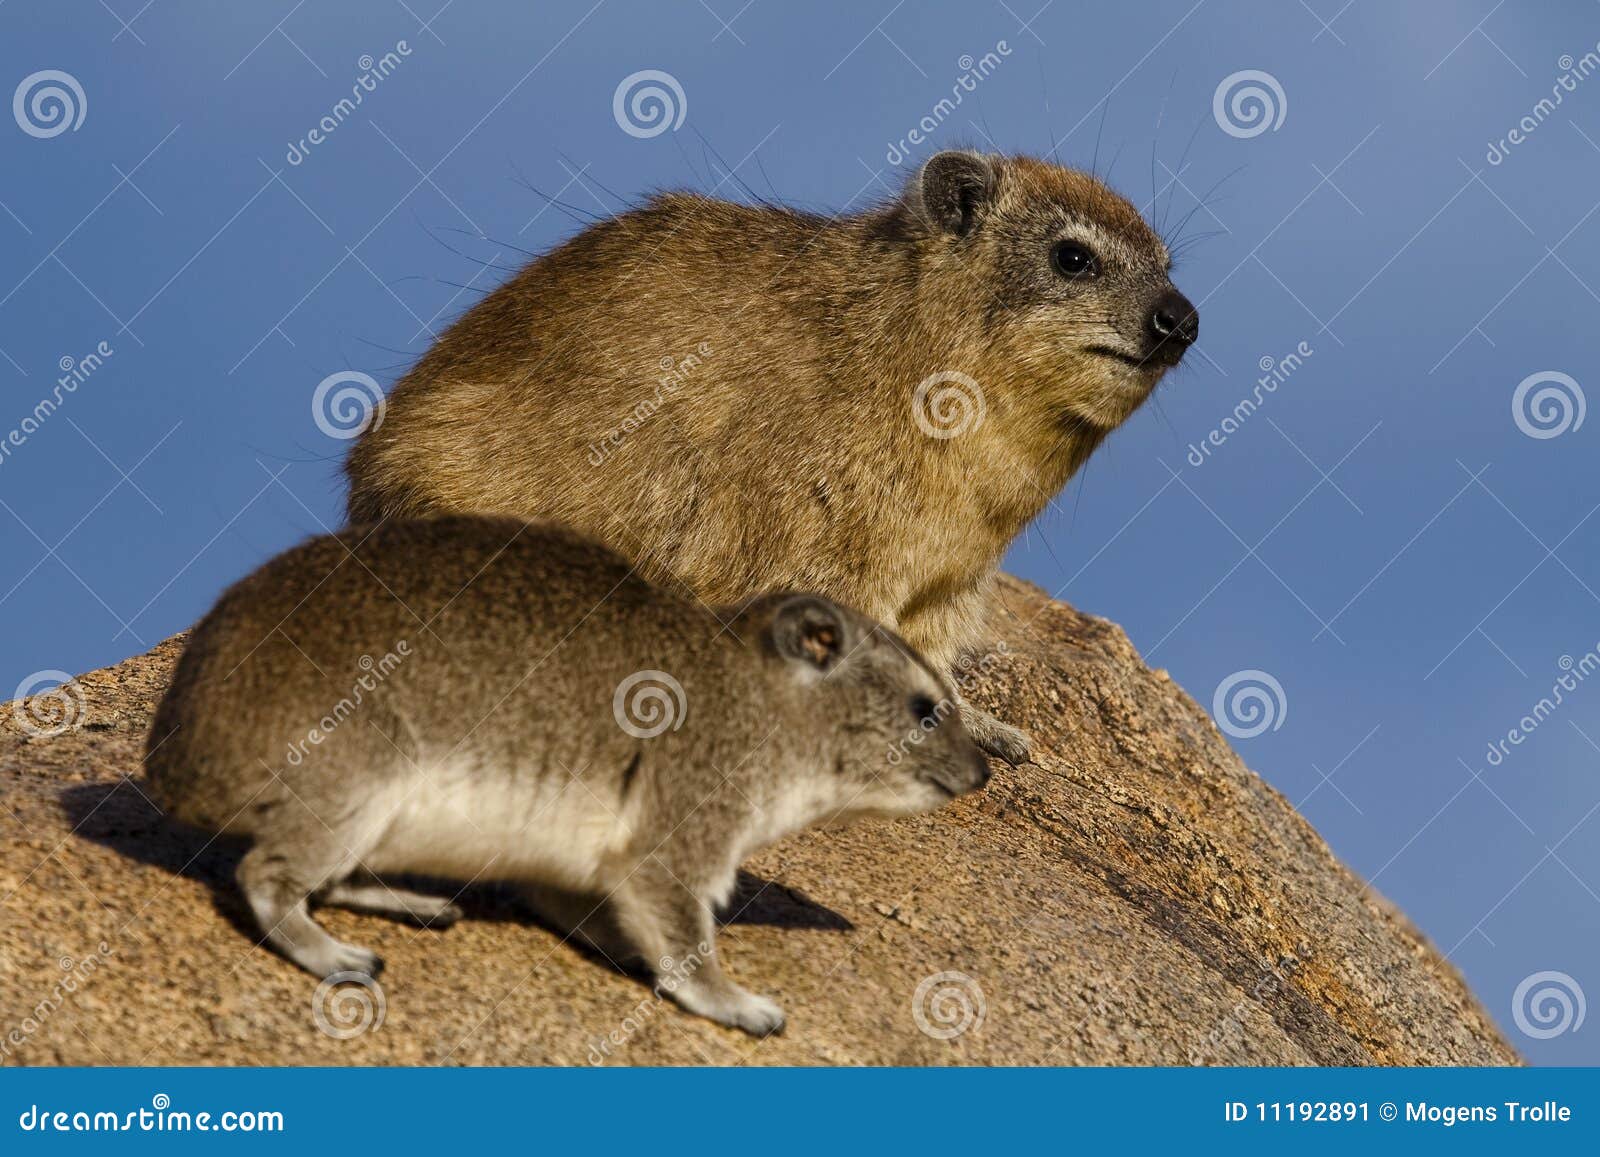 bush hyrax and rock hyrax, serengeti